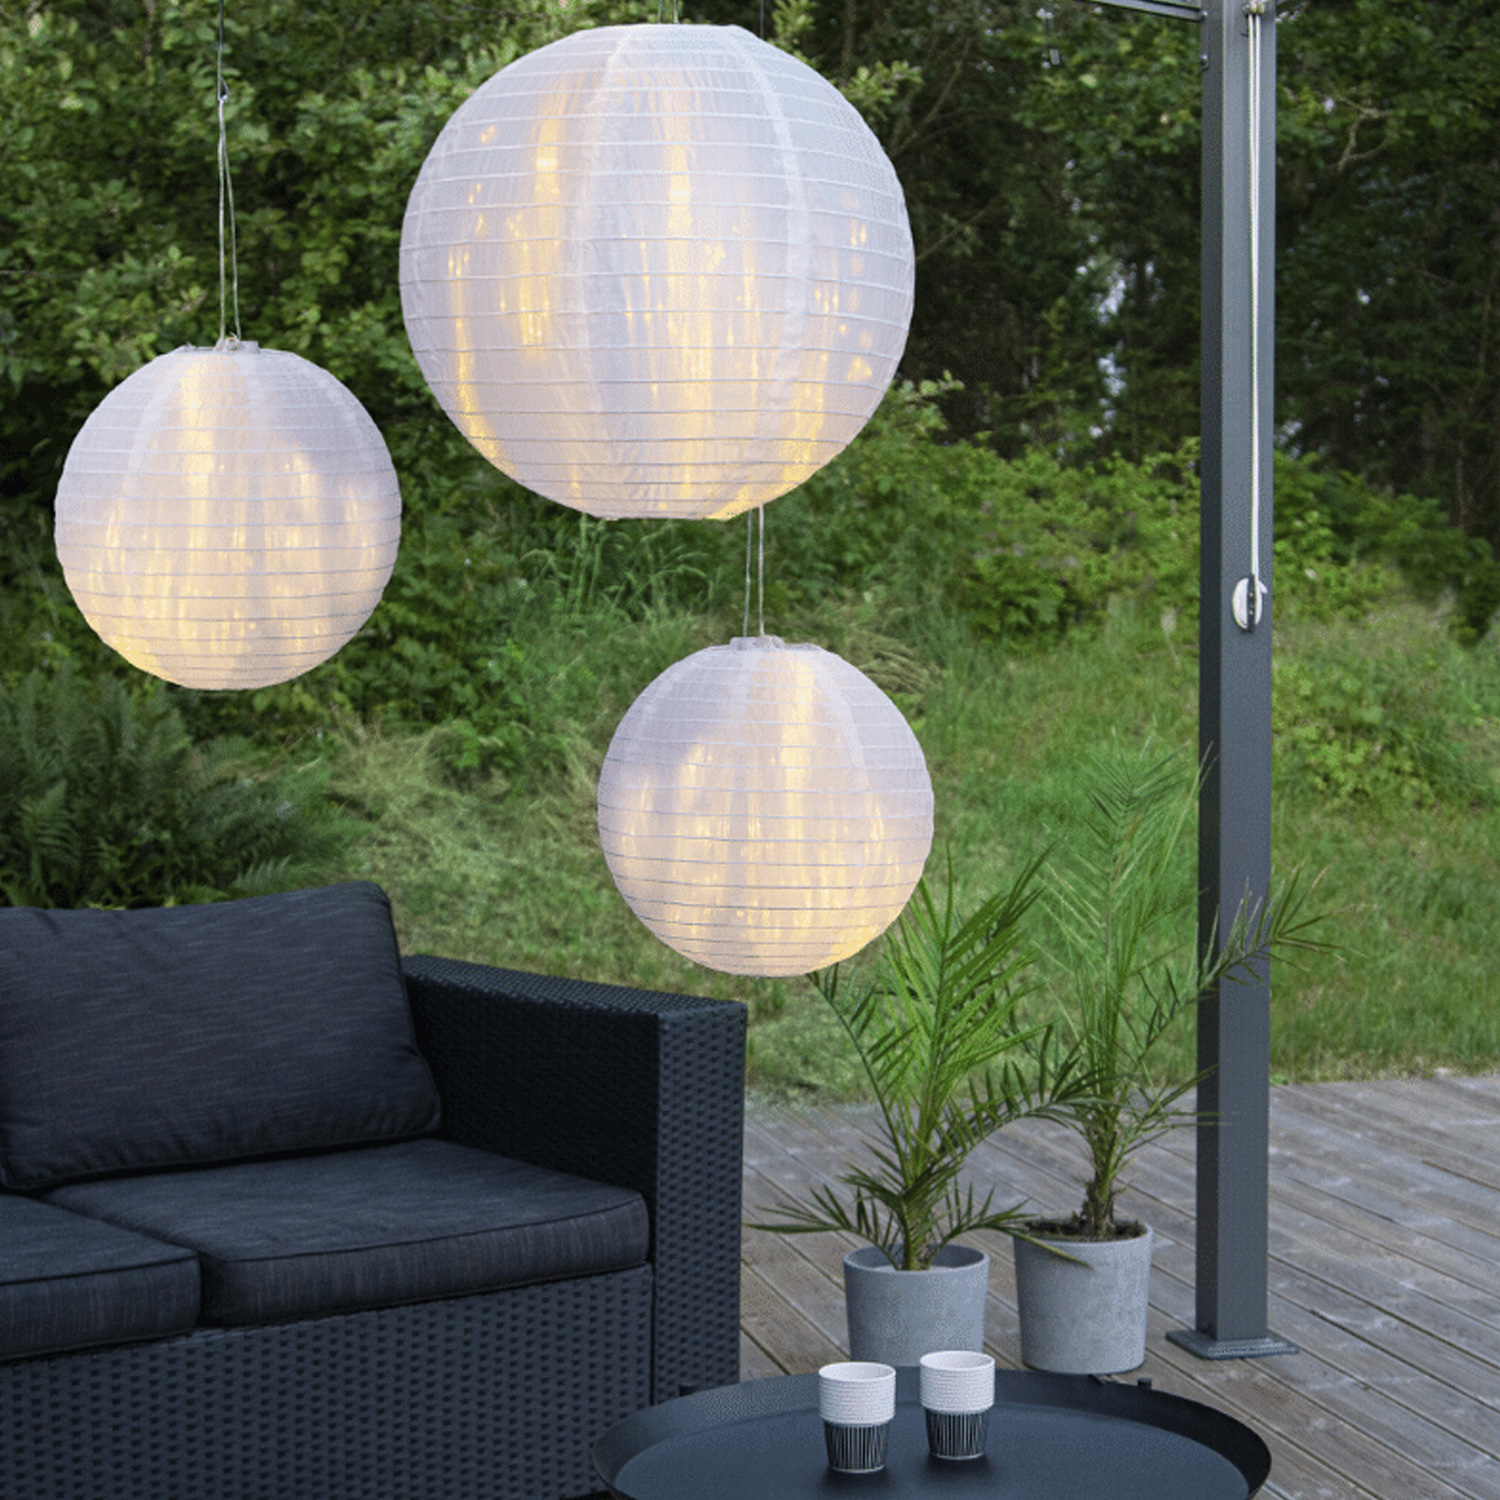 Lampion FESTIVAL - D: 40cm - für Hängefassungen oder Lichterketten - weiß - für Außen